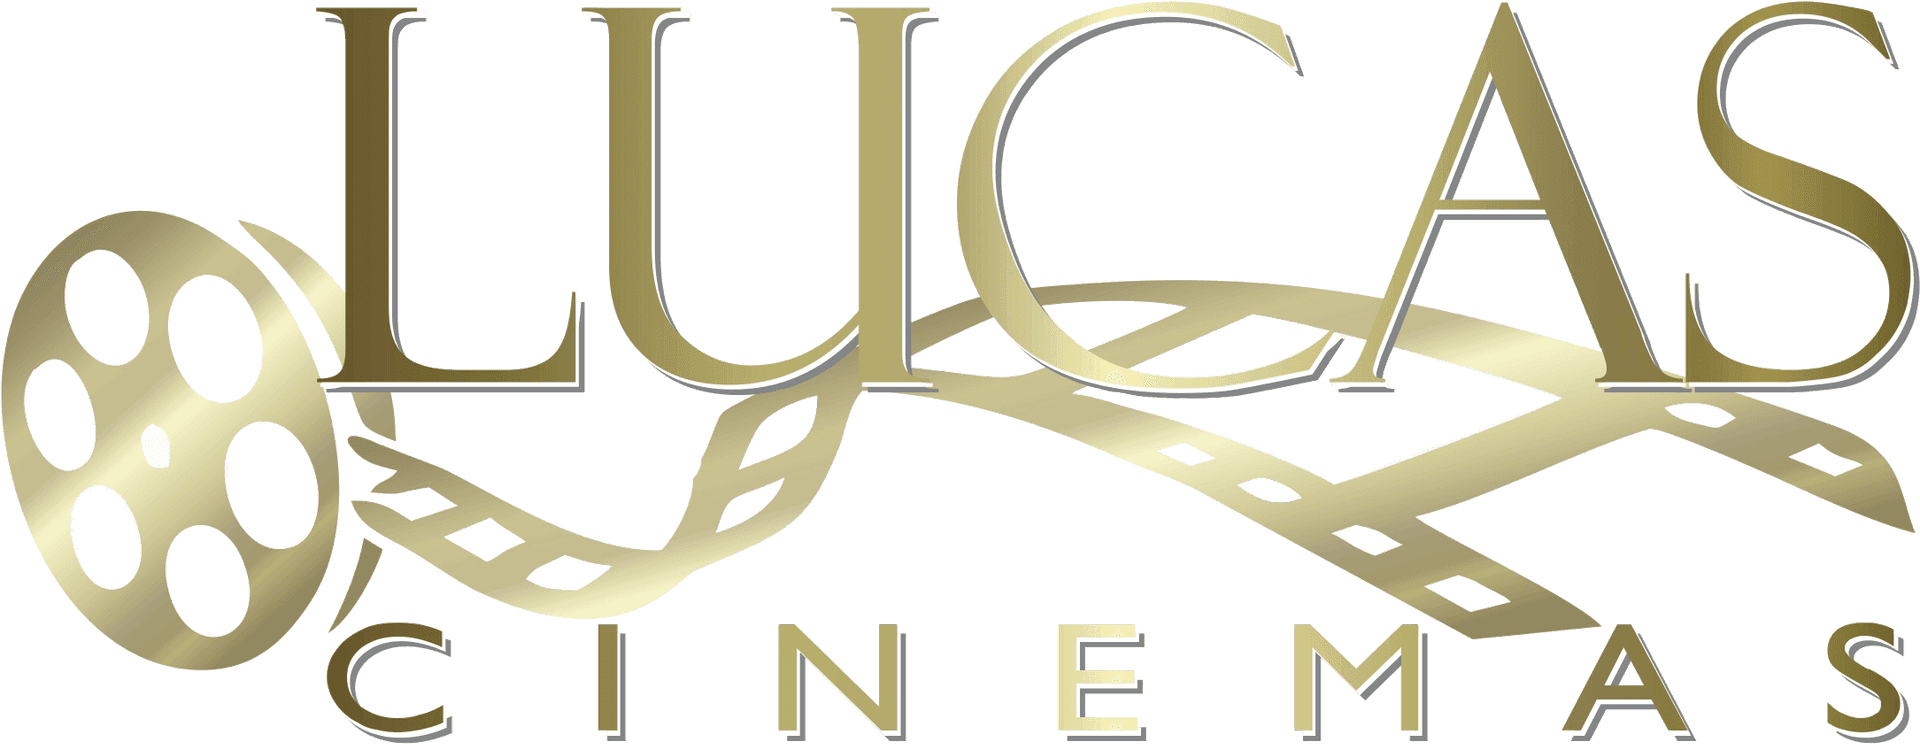 Lucas Cinemas Logo PNG image